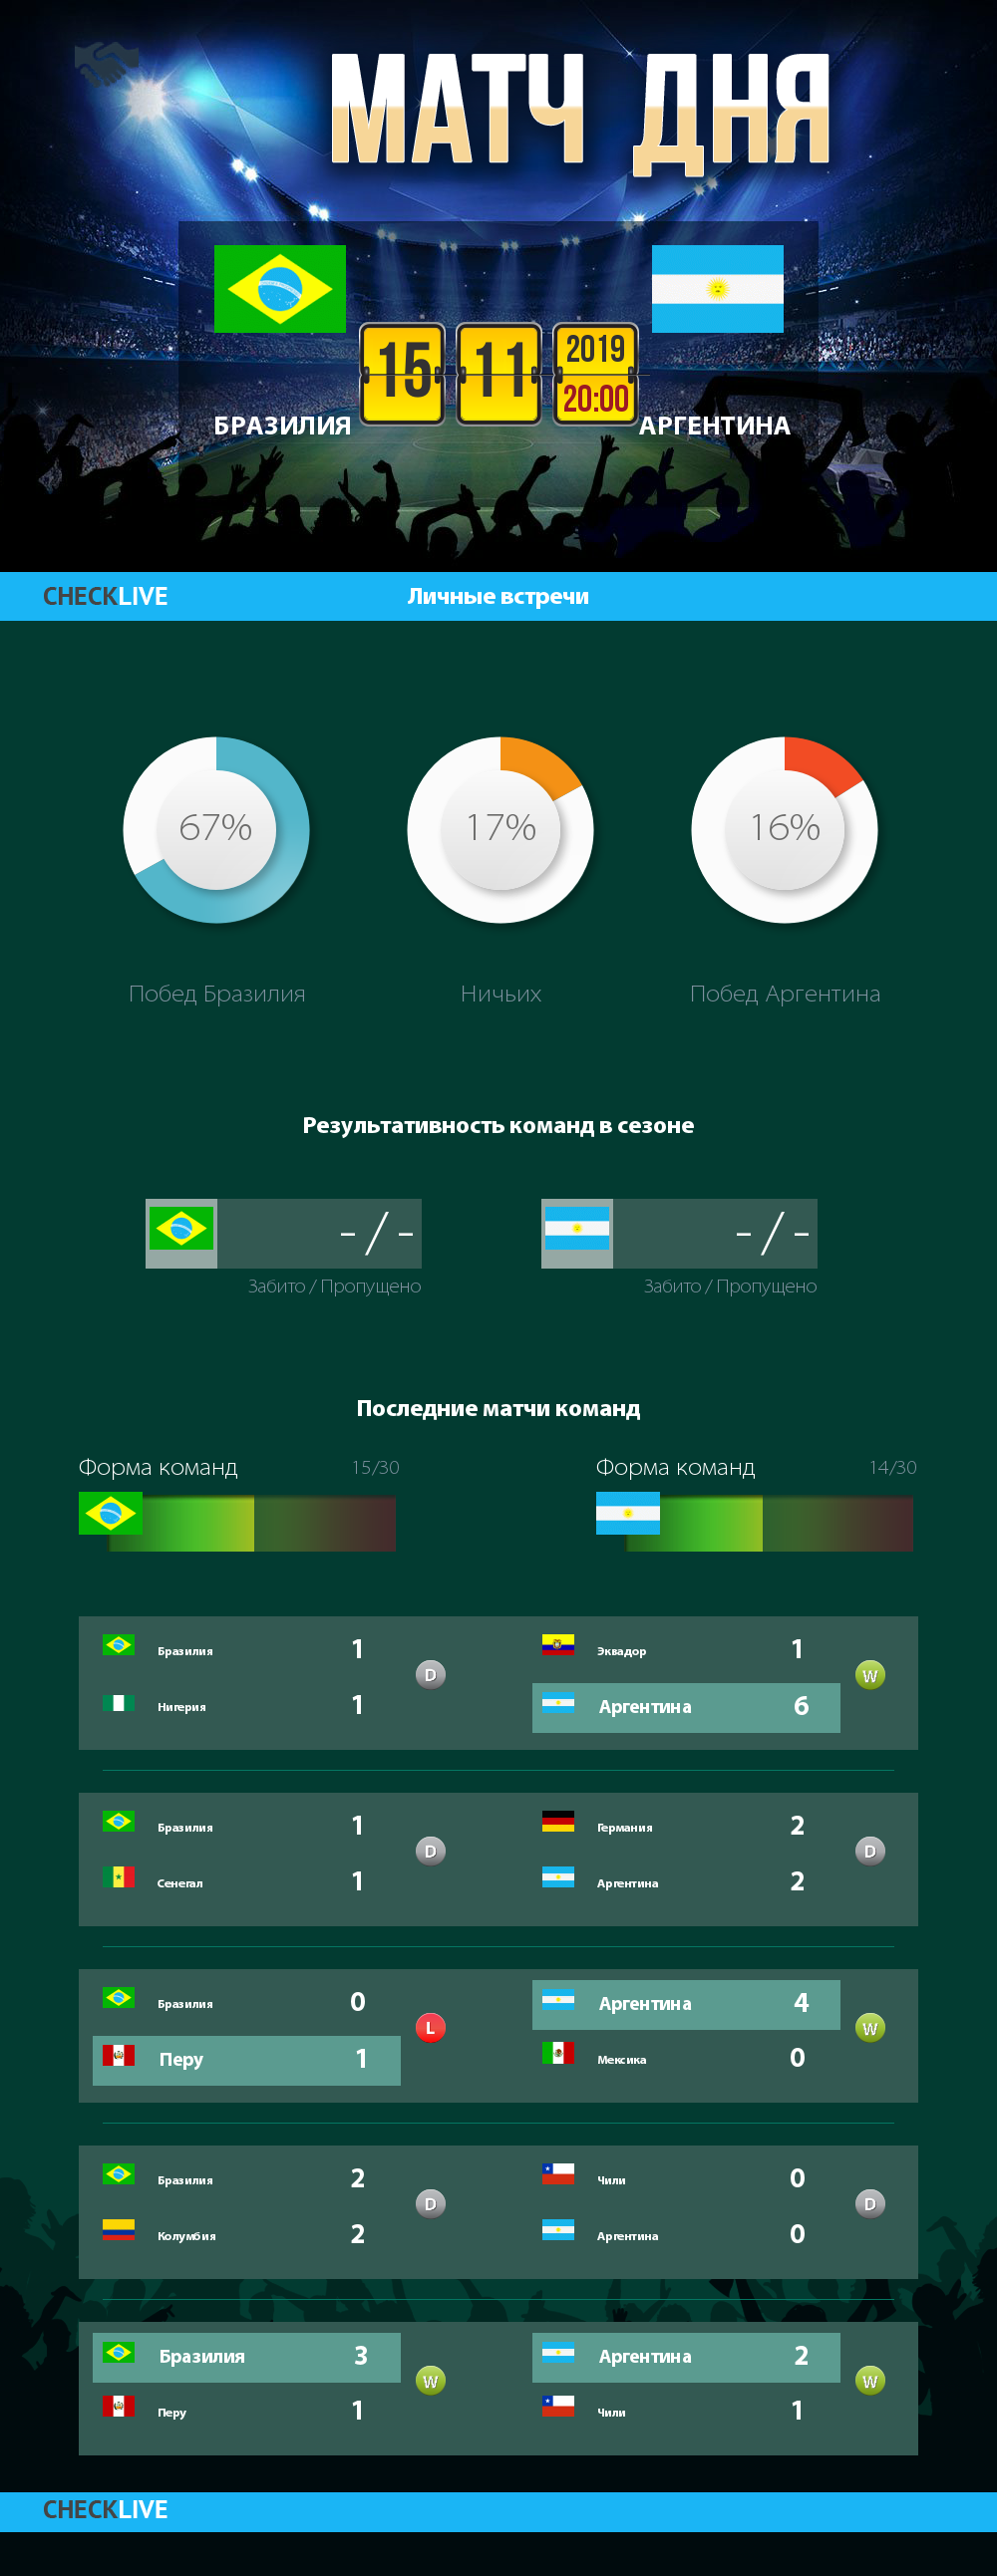 Инфографика Бразилия и Аргентина матч дня 15.11.2019